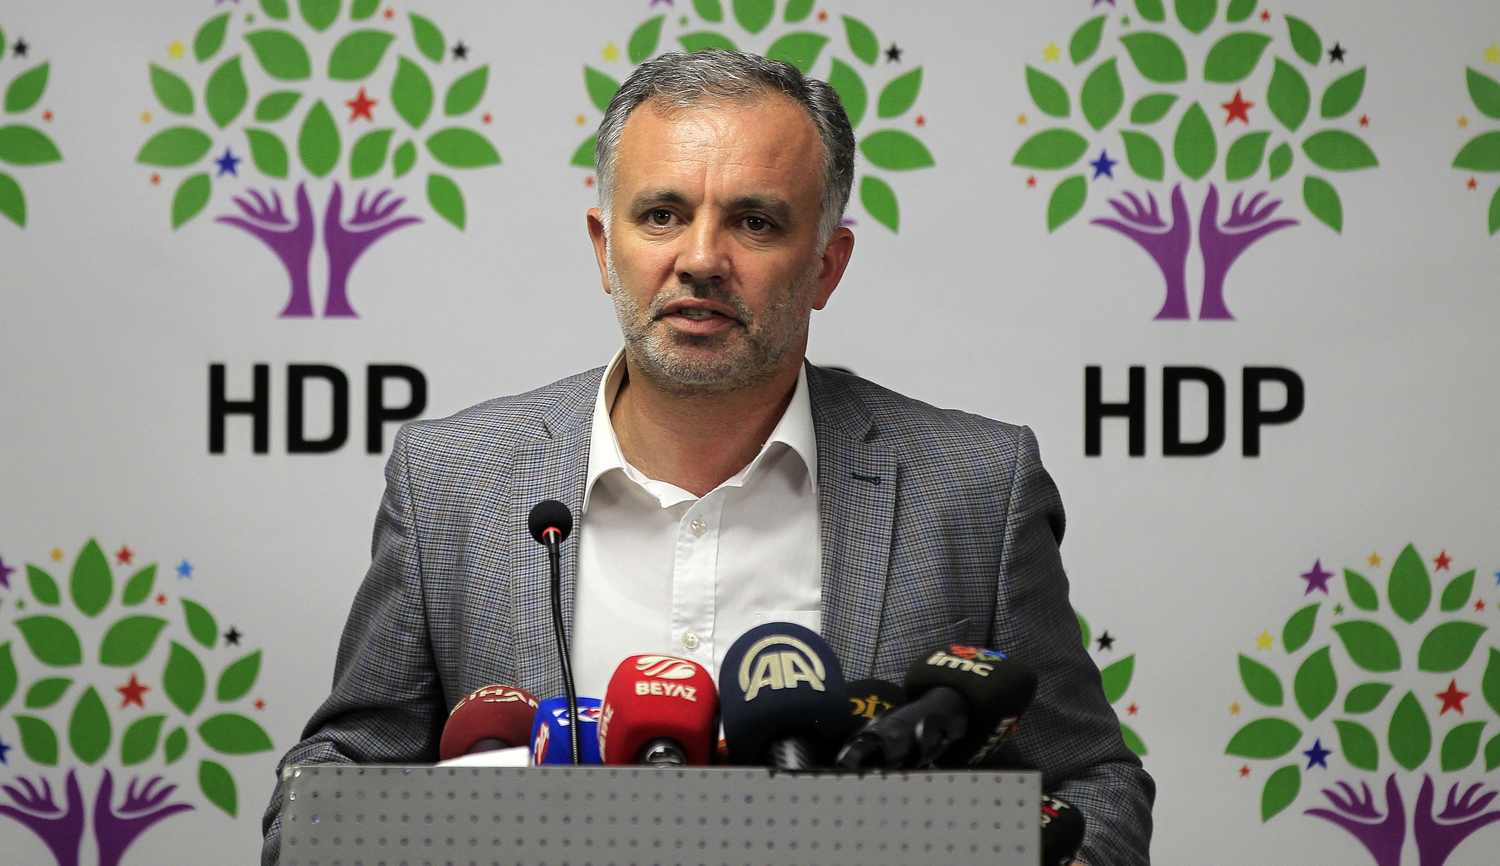 HDP: NATO'dan ayrılma söylemi komşularla ilişkilere zarar verir